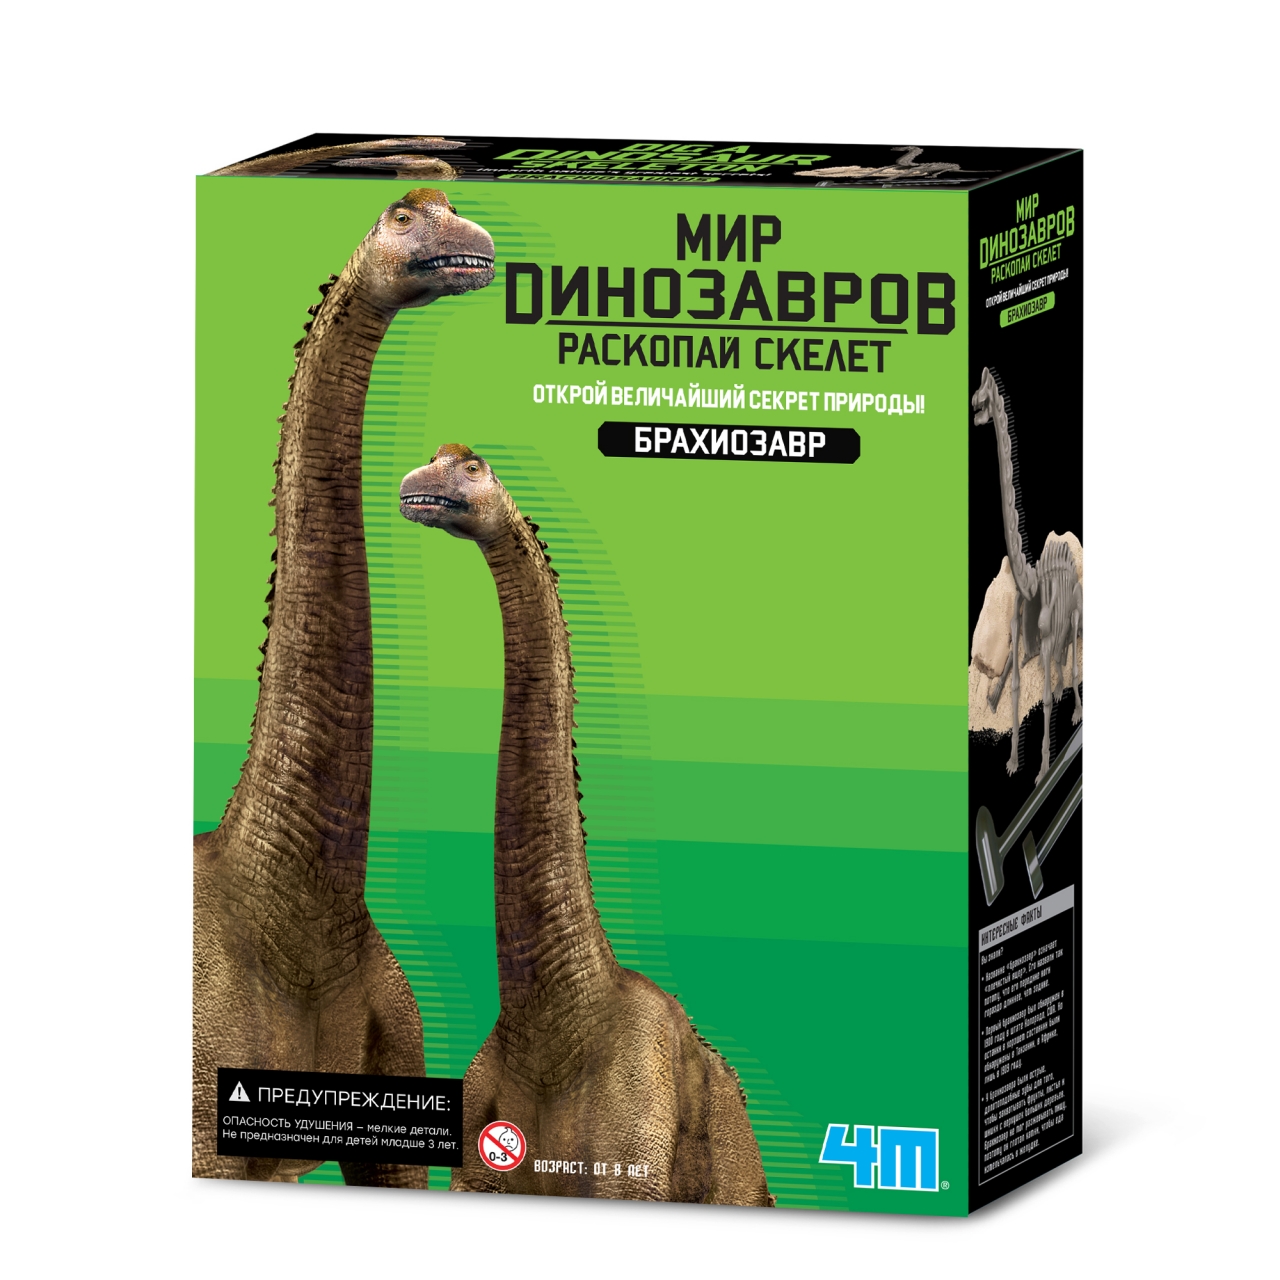 Набор для опытов 4М Игра раскопки для детей Раскопай скелет динозавра Фигурка Брахиозавра драгоценности восьми кусков парчи